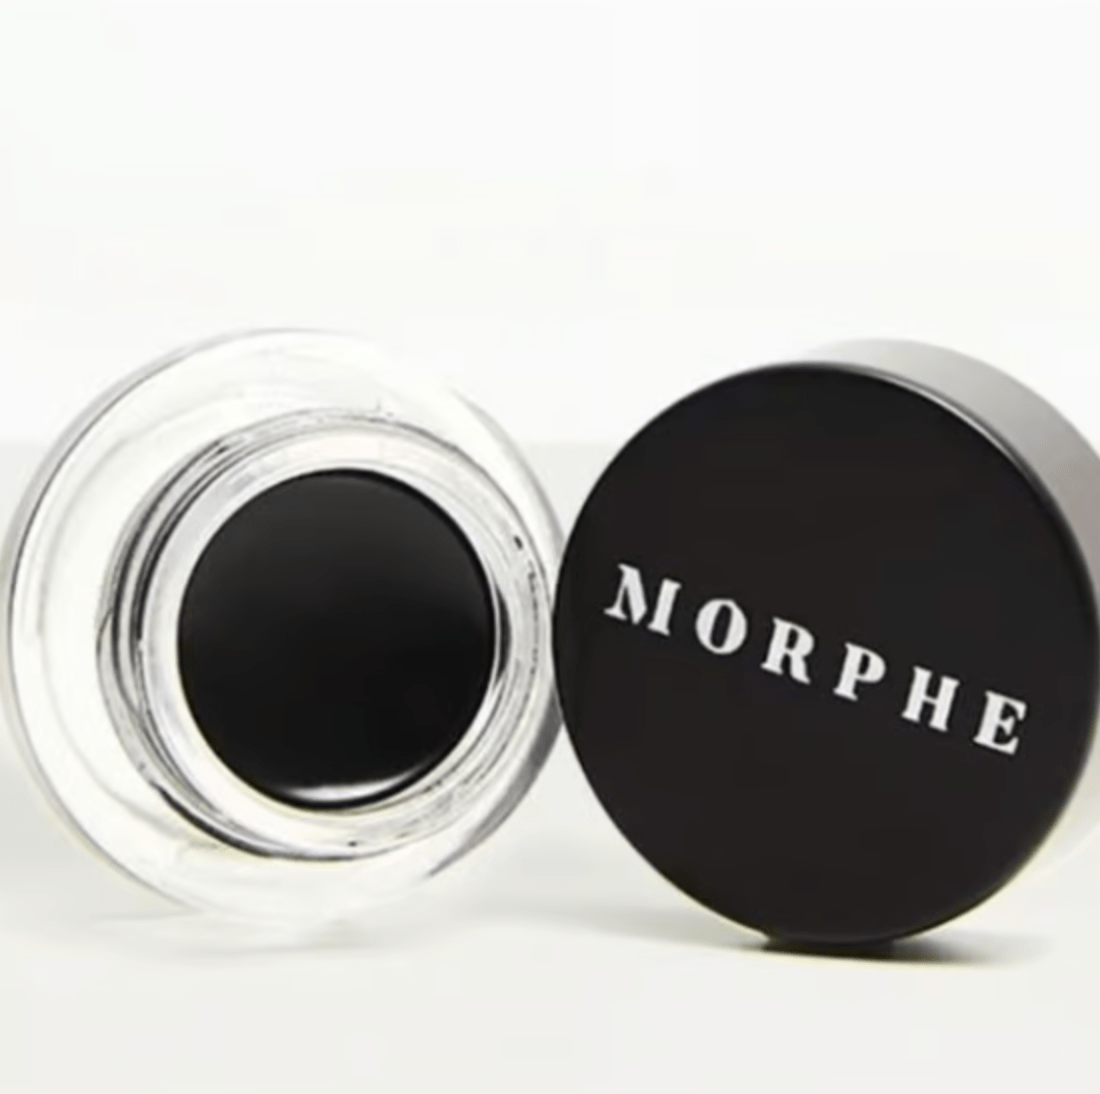 Morphe Eyeliner Gel Jet Black (ORIGINAL BRAND NEW IN BOX)